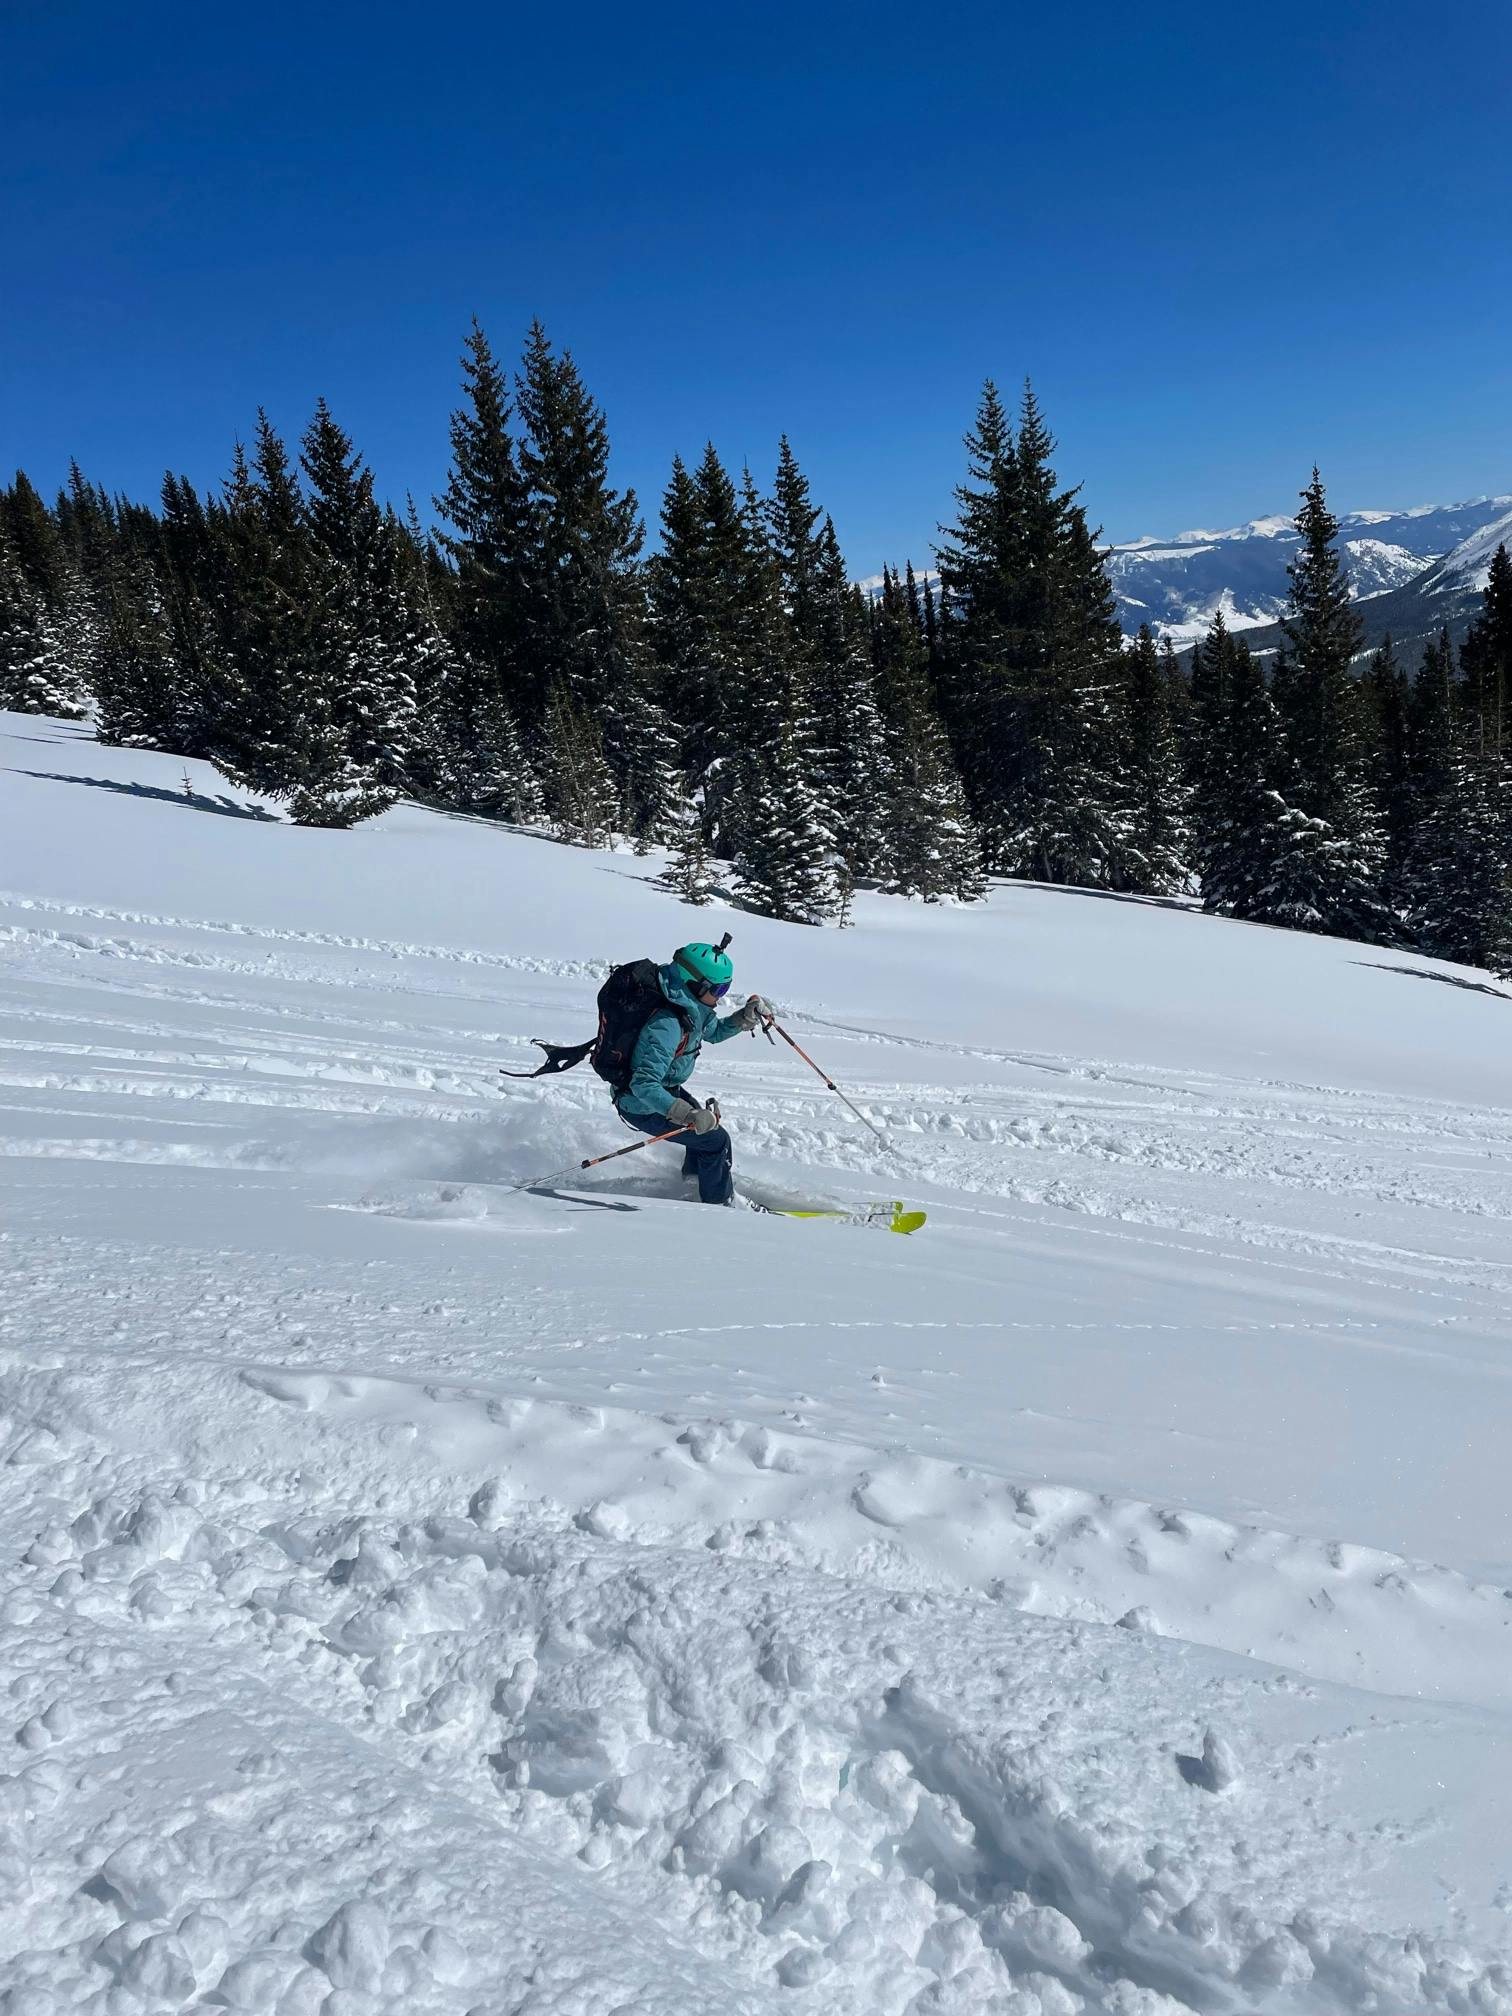 A skiing woman turns down a snowy run.